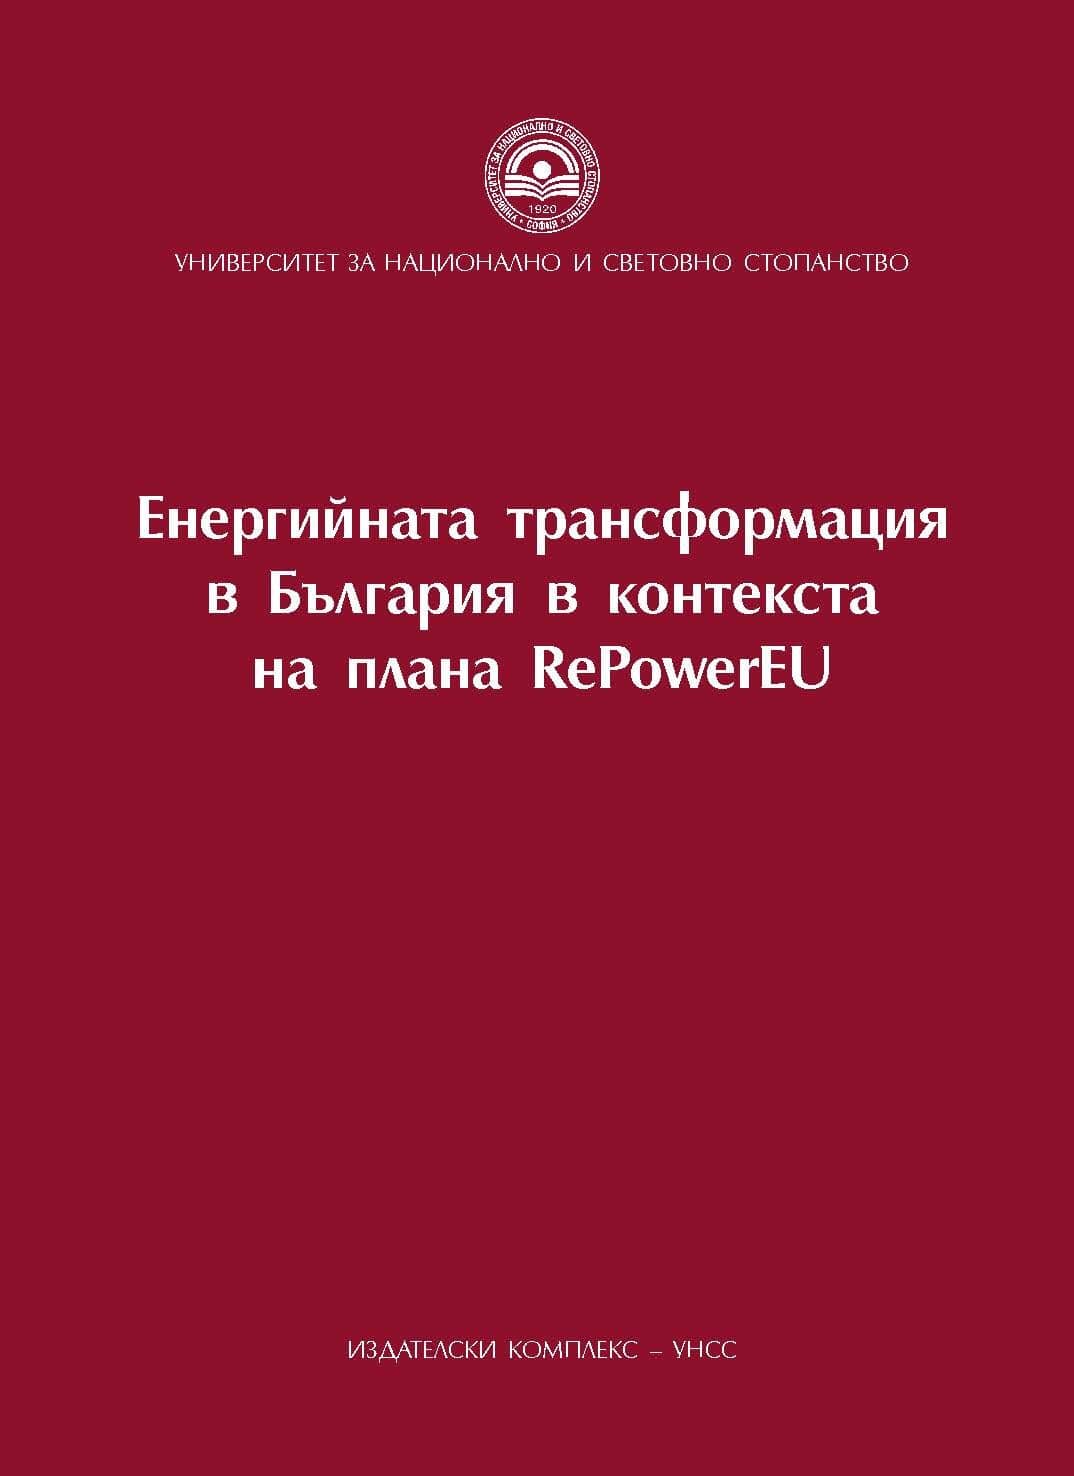 Зелената сделка и ускоряването на енергийния преход чрез плана REPowerEU